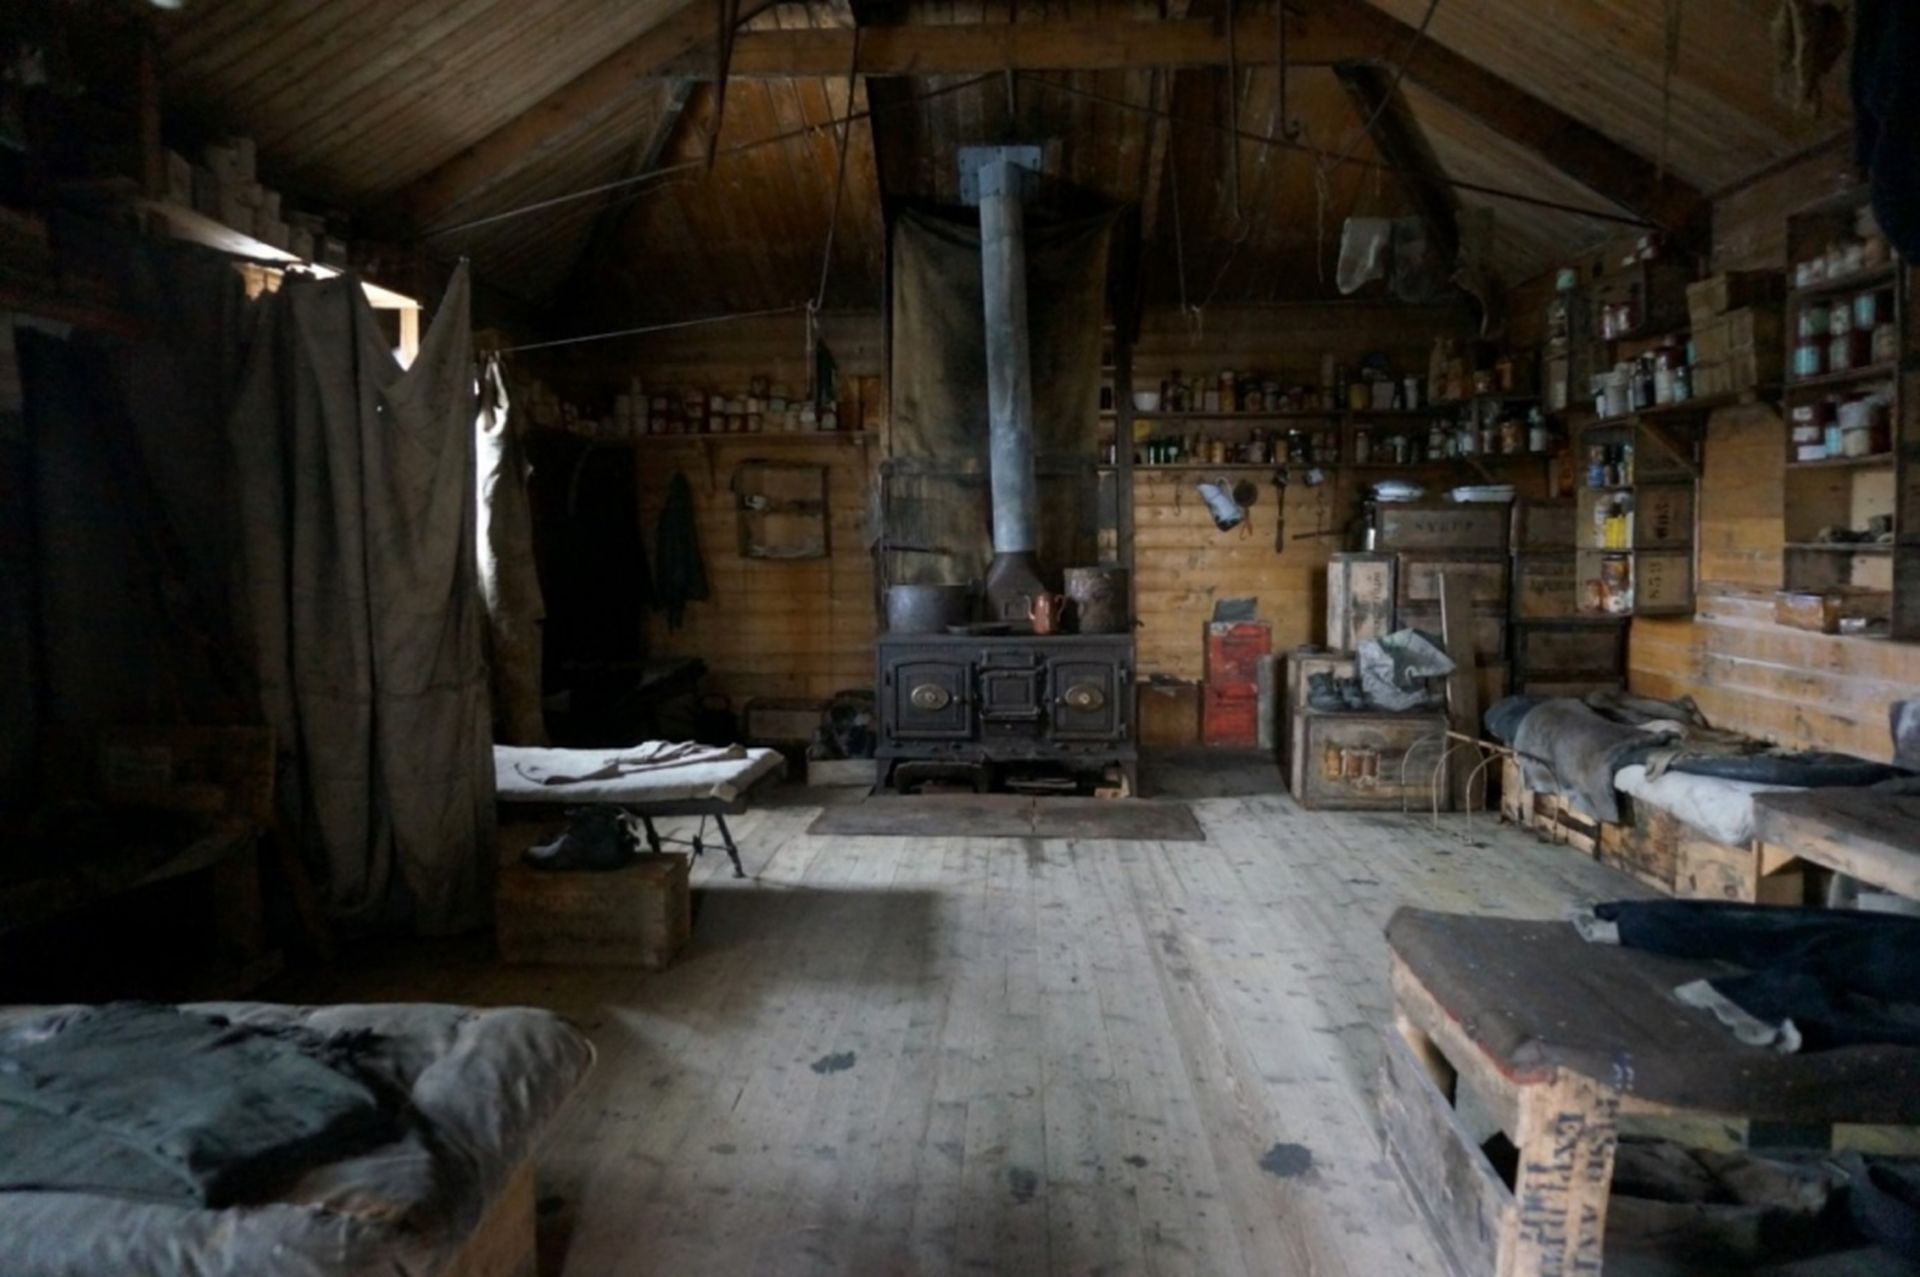 Inside Shackleton's hut